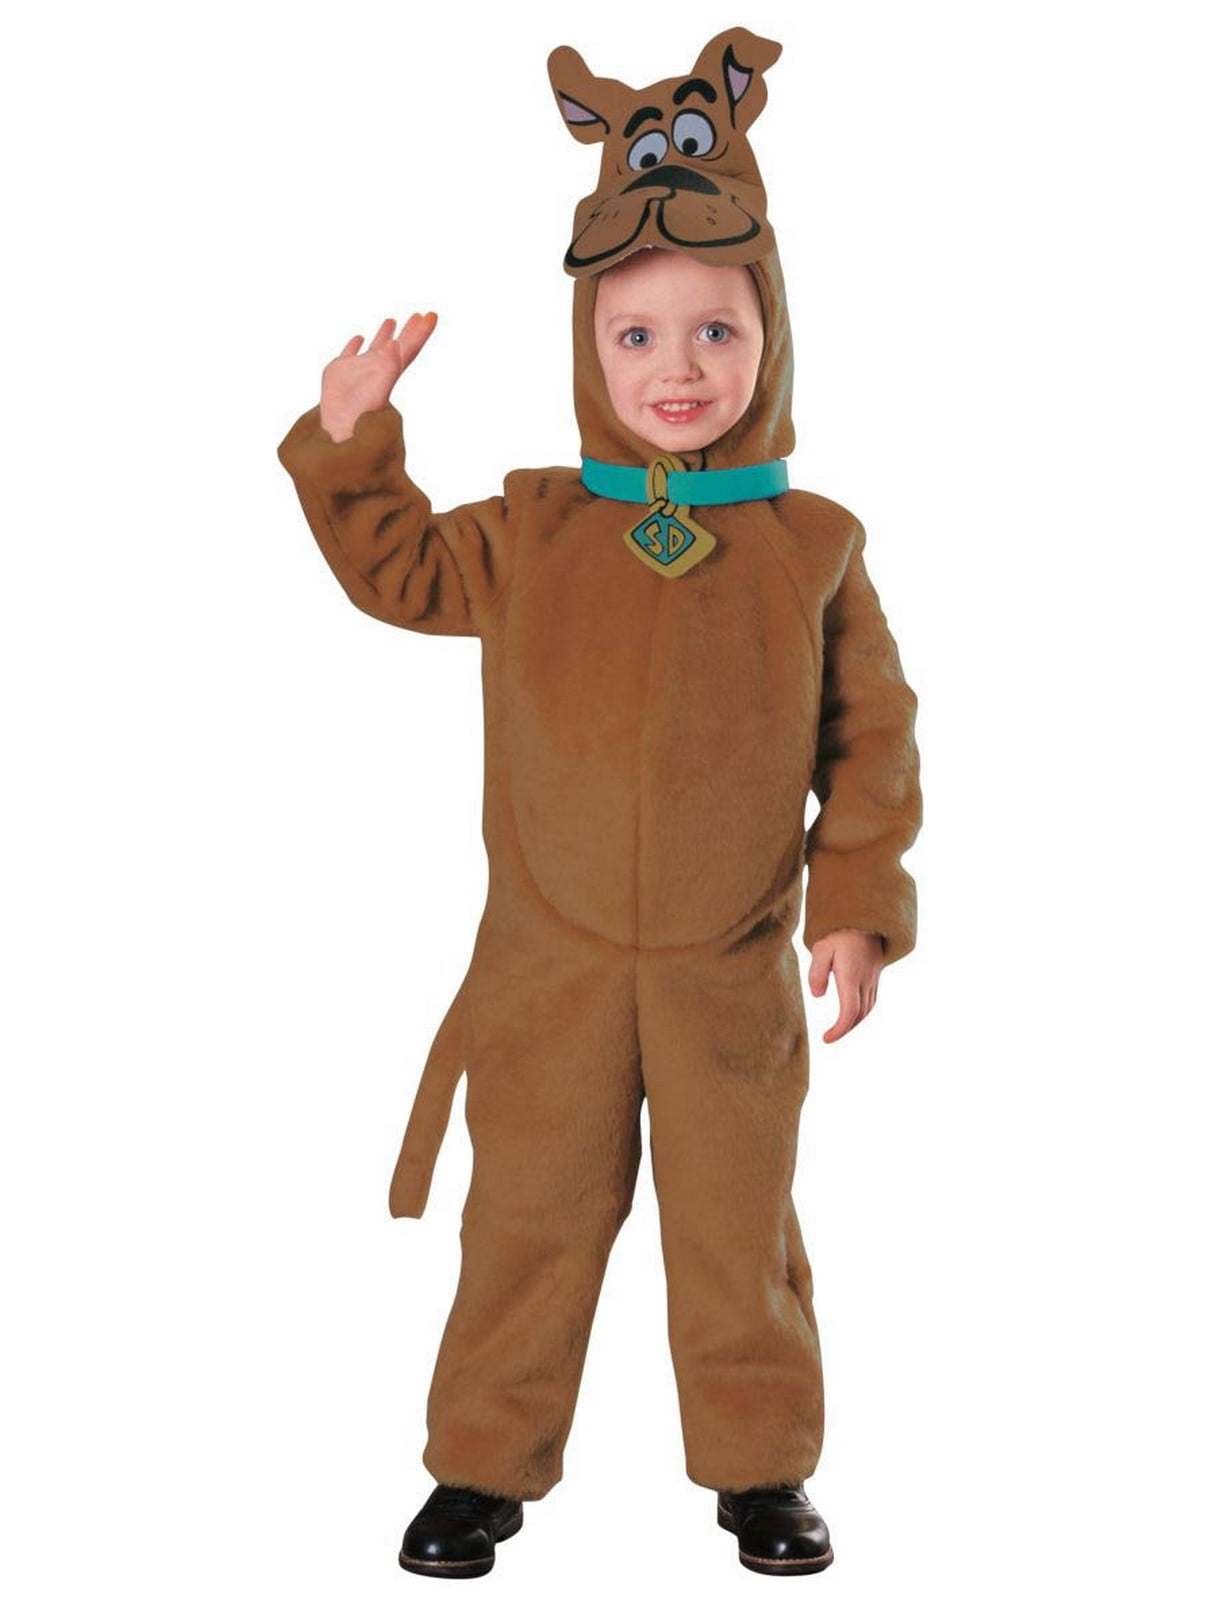 Scooby Doo Deluxe Child Costume - Walmart.com - Walmart.com